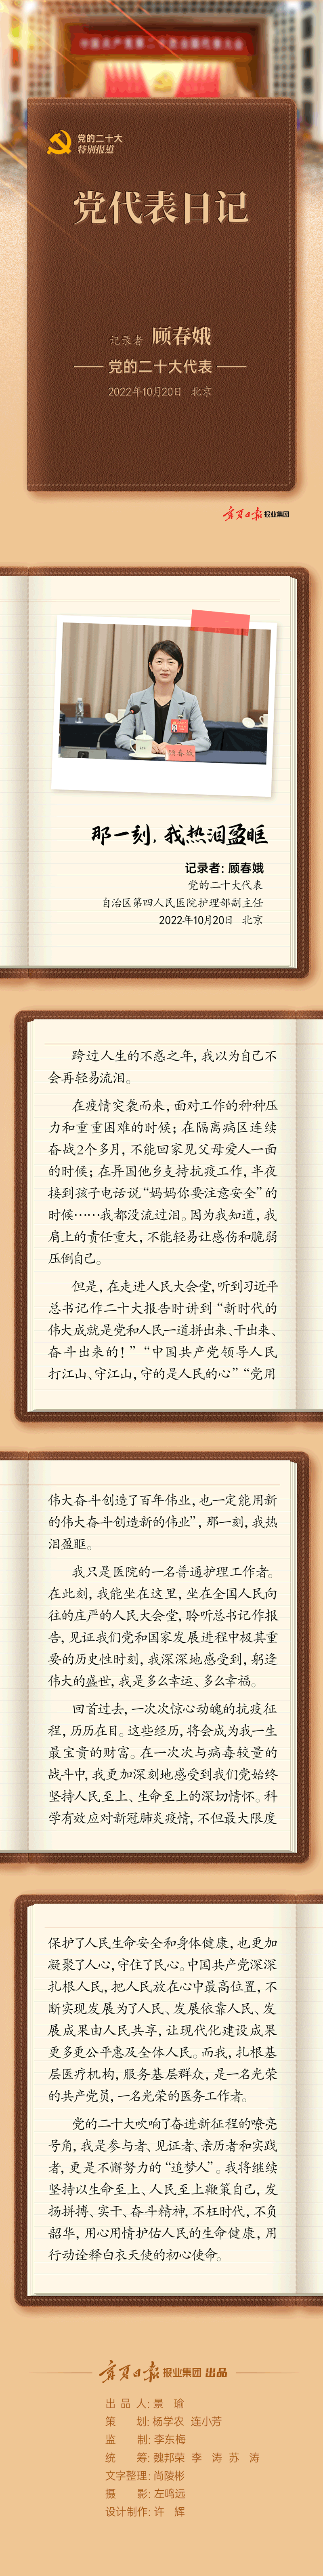 党代表日记-顾春娥-静态长图.png